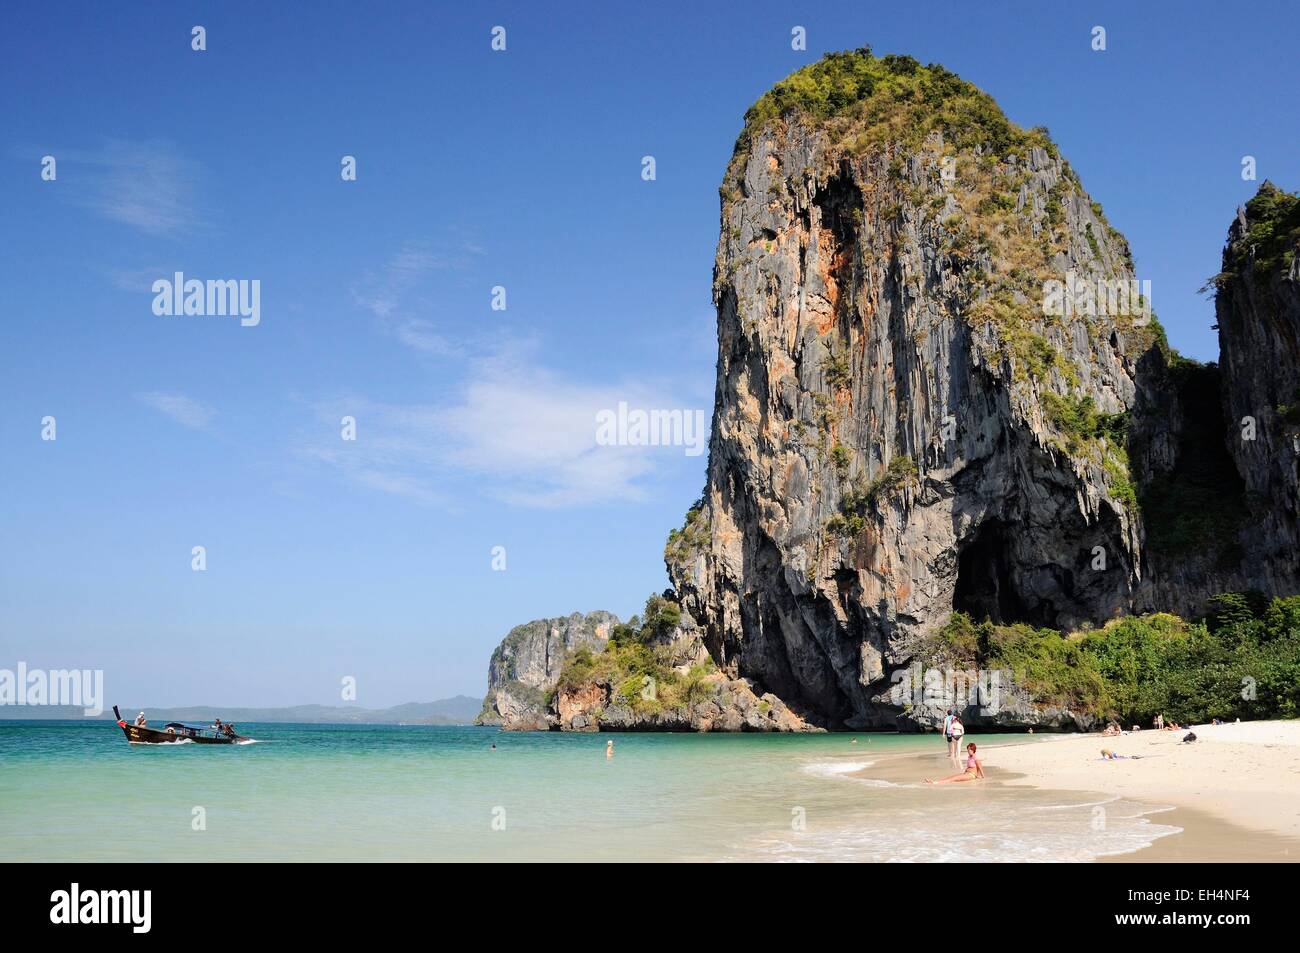 La Thaïlande, Krabi, Railay, Hat Phra Nang, la belle plage de Phra Nang Railay avec falaises calcaires et de l'eau claire comme du cristal Banque D'Images